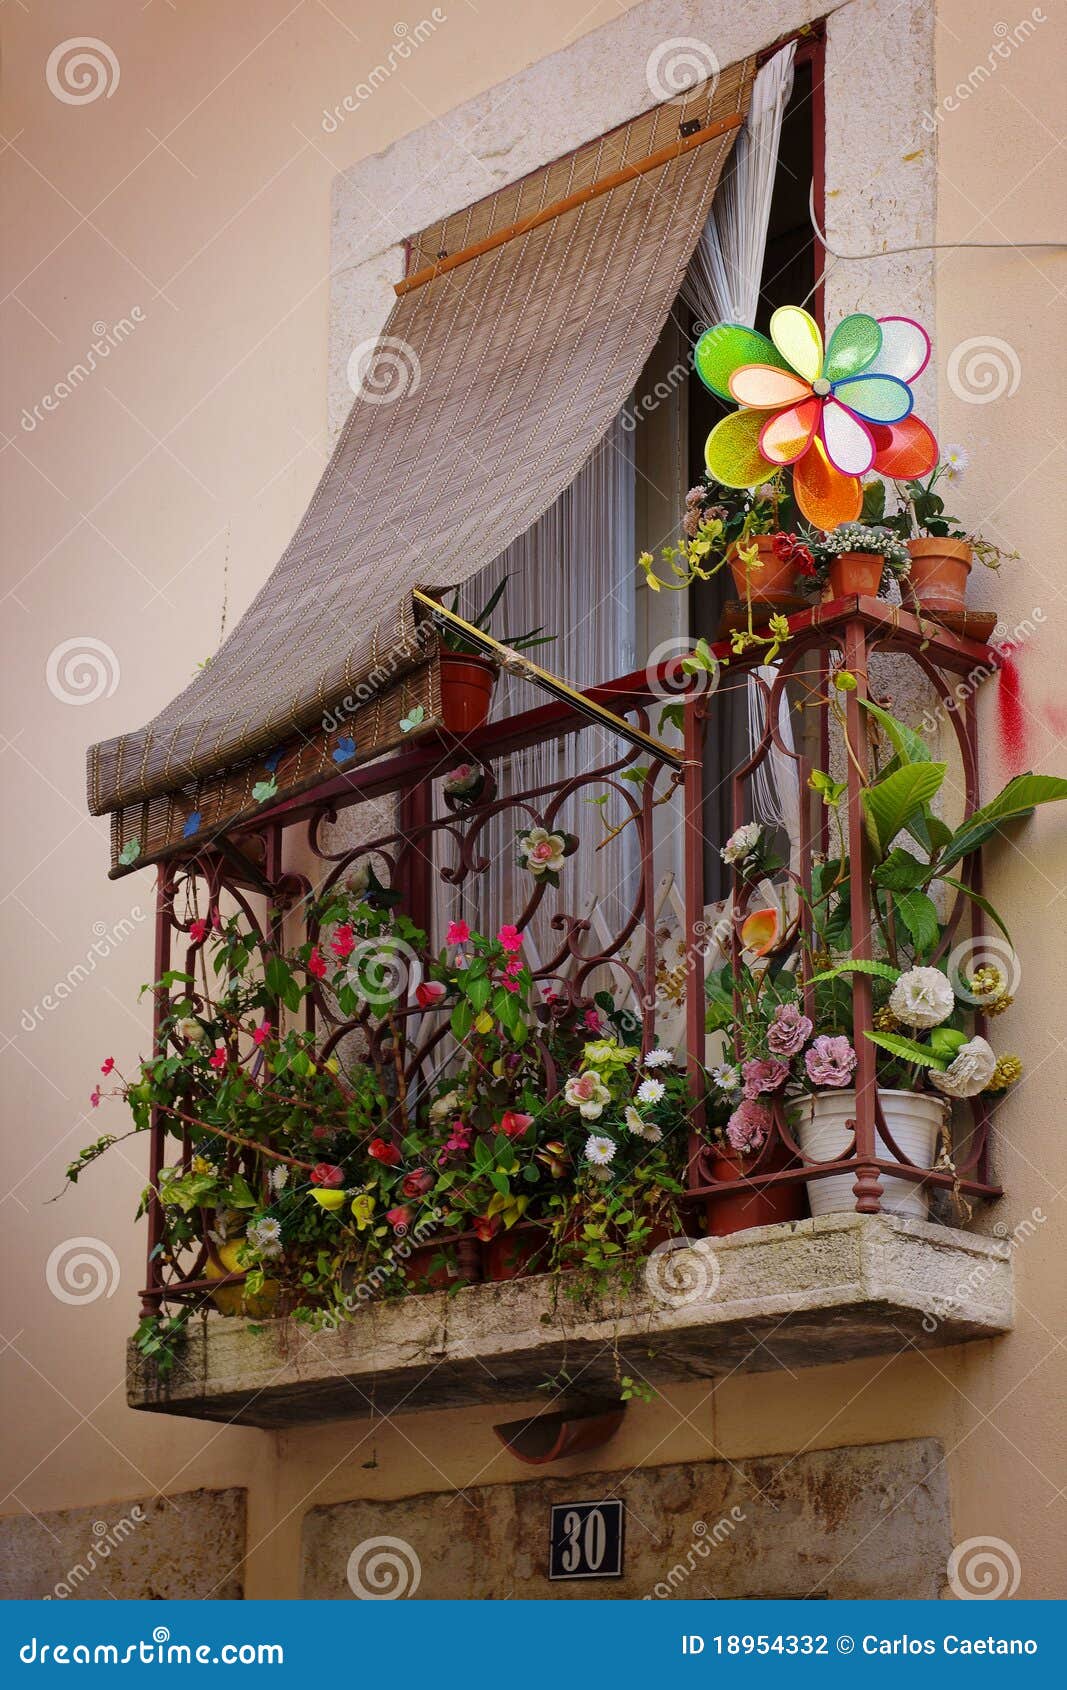 flowery balcony